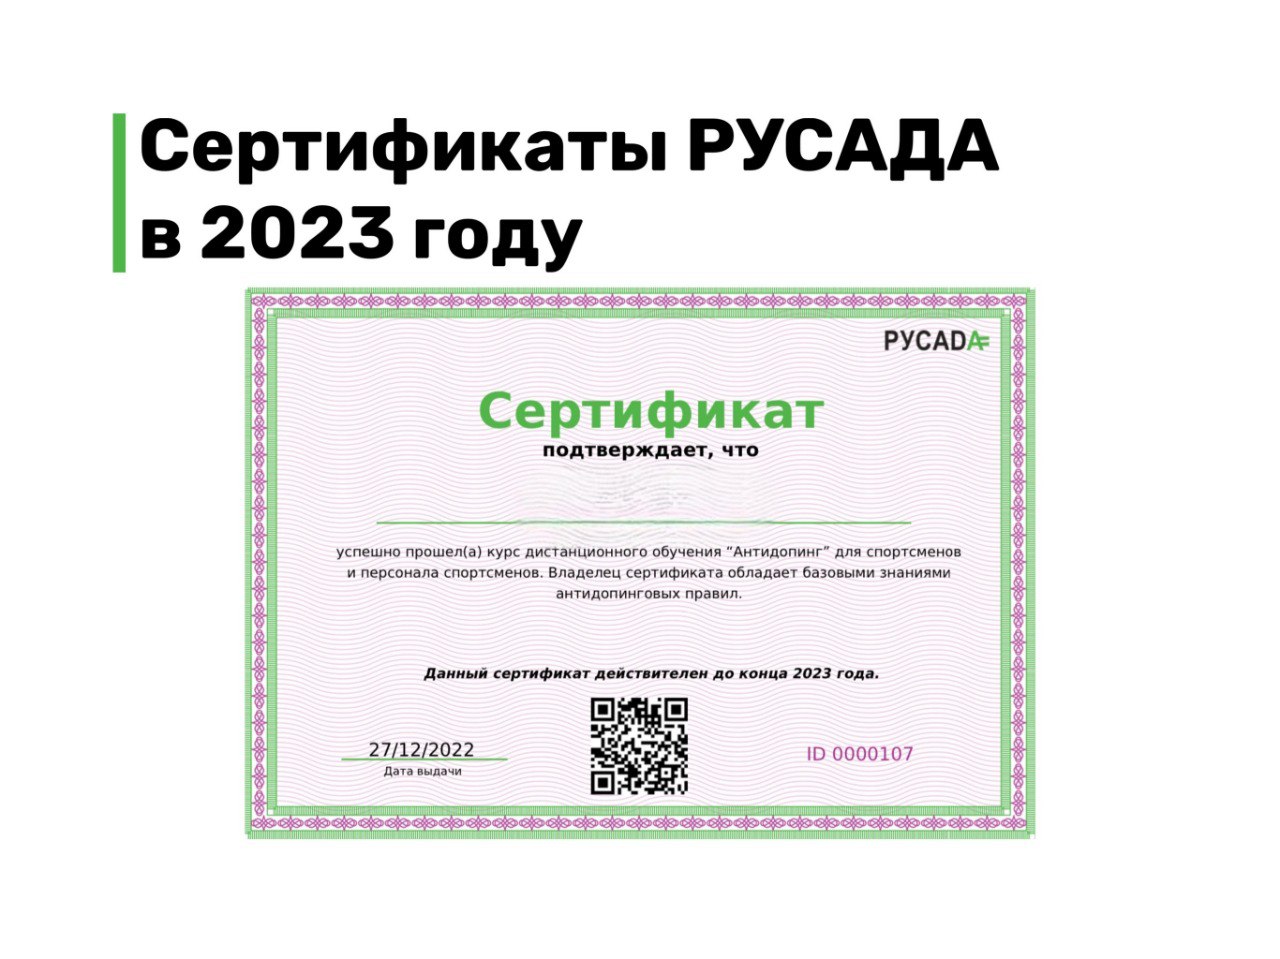 Русада пройти антидопинговый тест для получения сертификата. Сертификат РУСАДА 2023. Сертификат РУСАДА антидопинг 2023. Сертификаты 2023 года. Сертификат РУСАДА антидопинг.